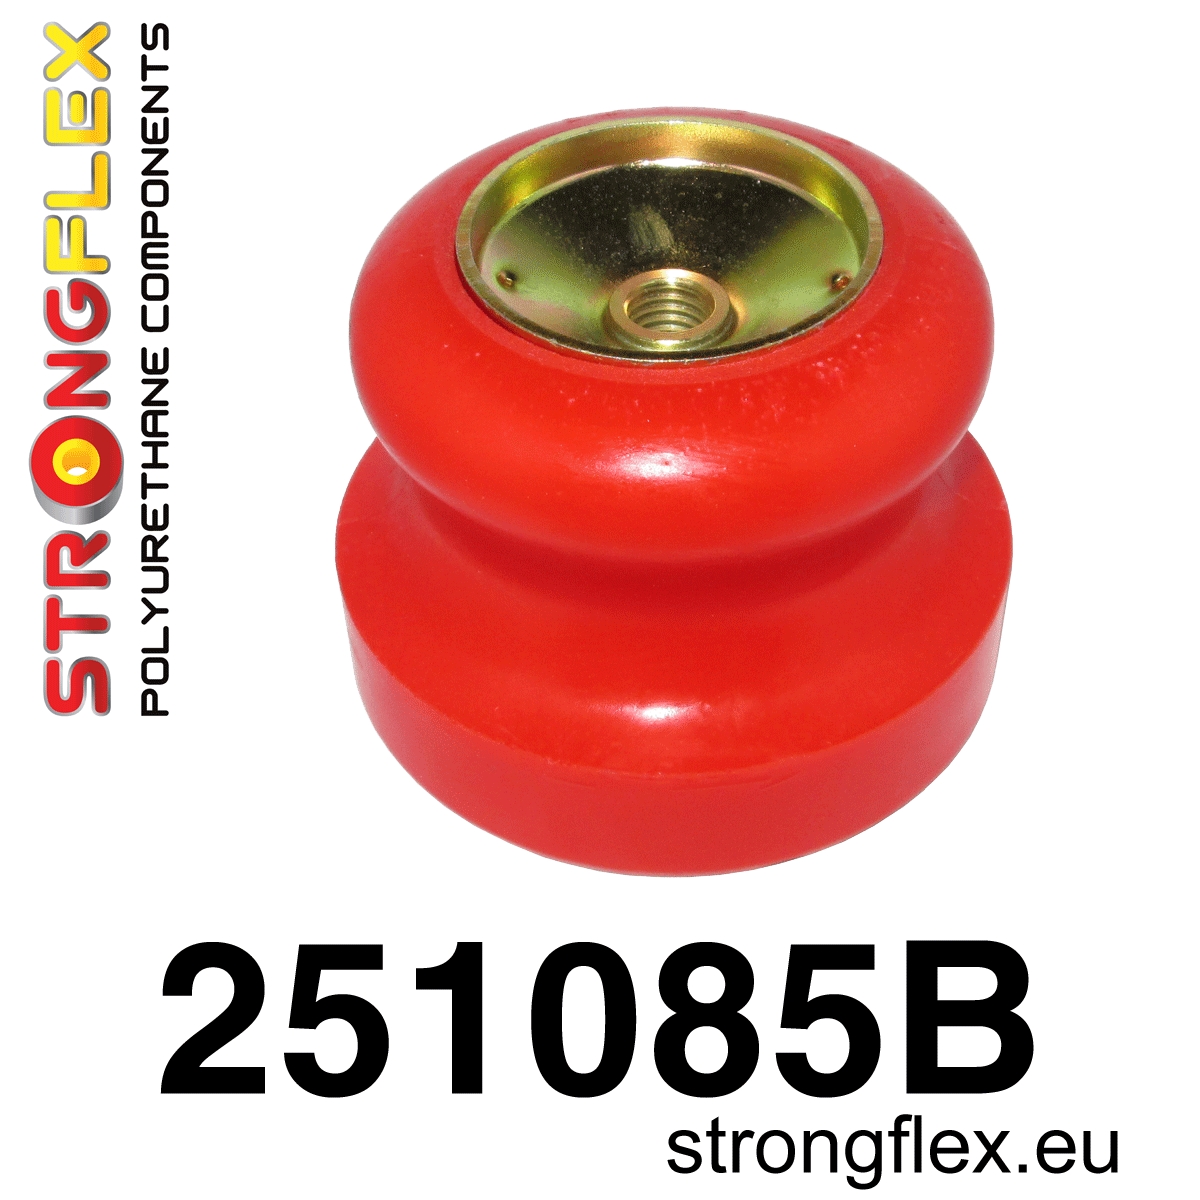 251085B: Suspension cone Mini